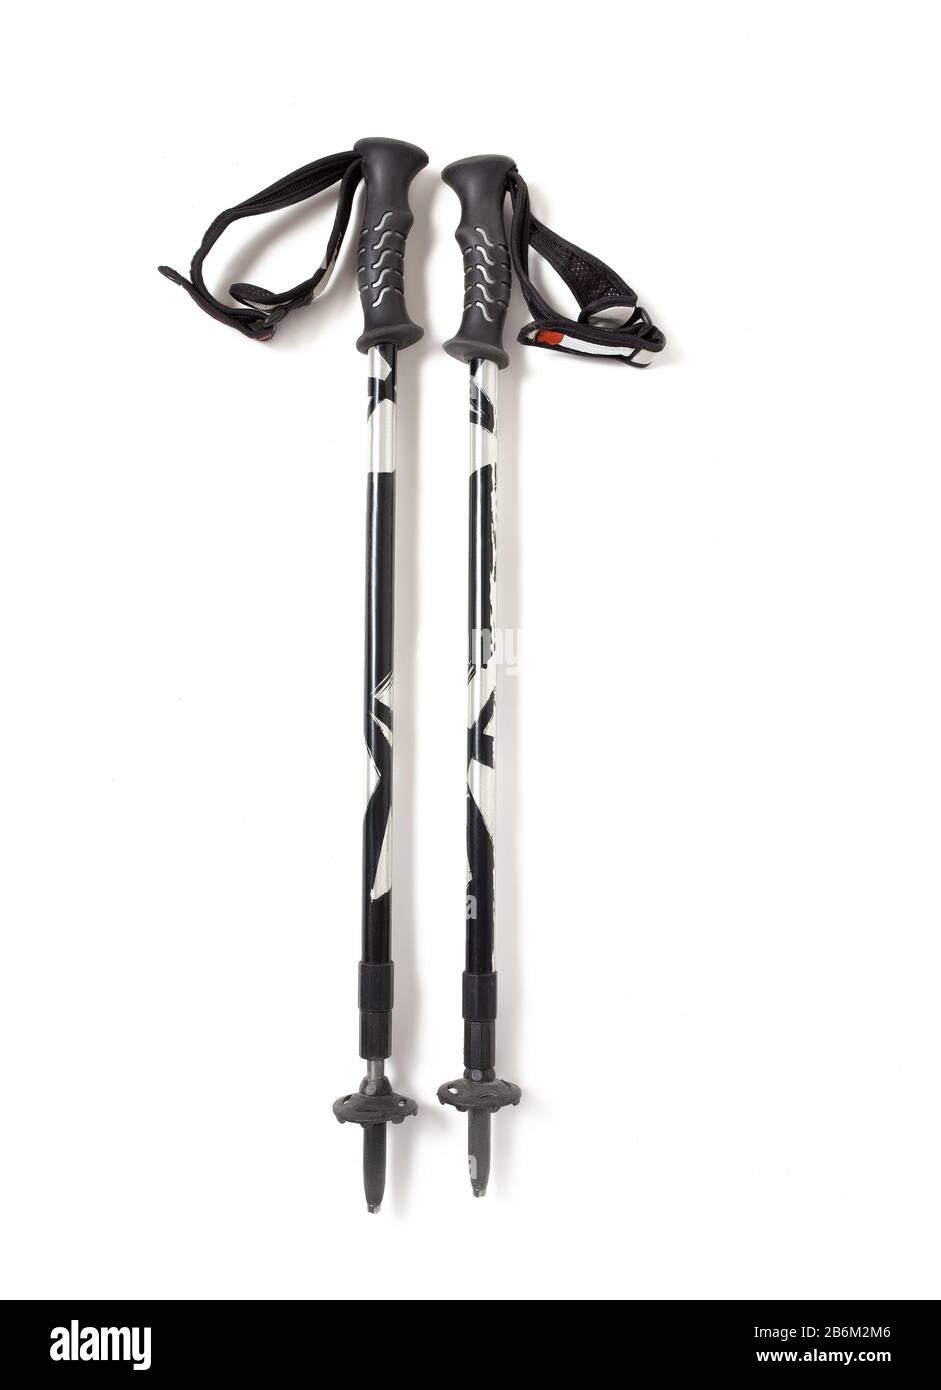 Une paire de bâtons de randonnée ou de bâtons de ski isolés sur fond blanc  Photo Stock - Alamy